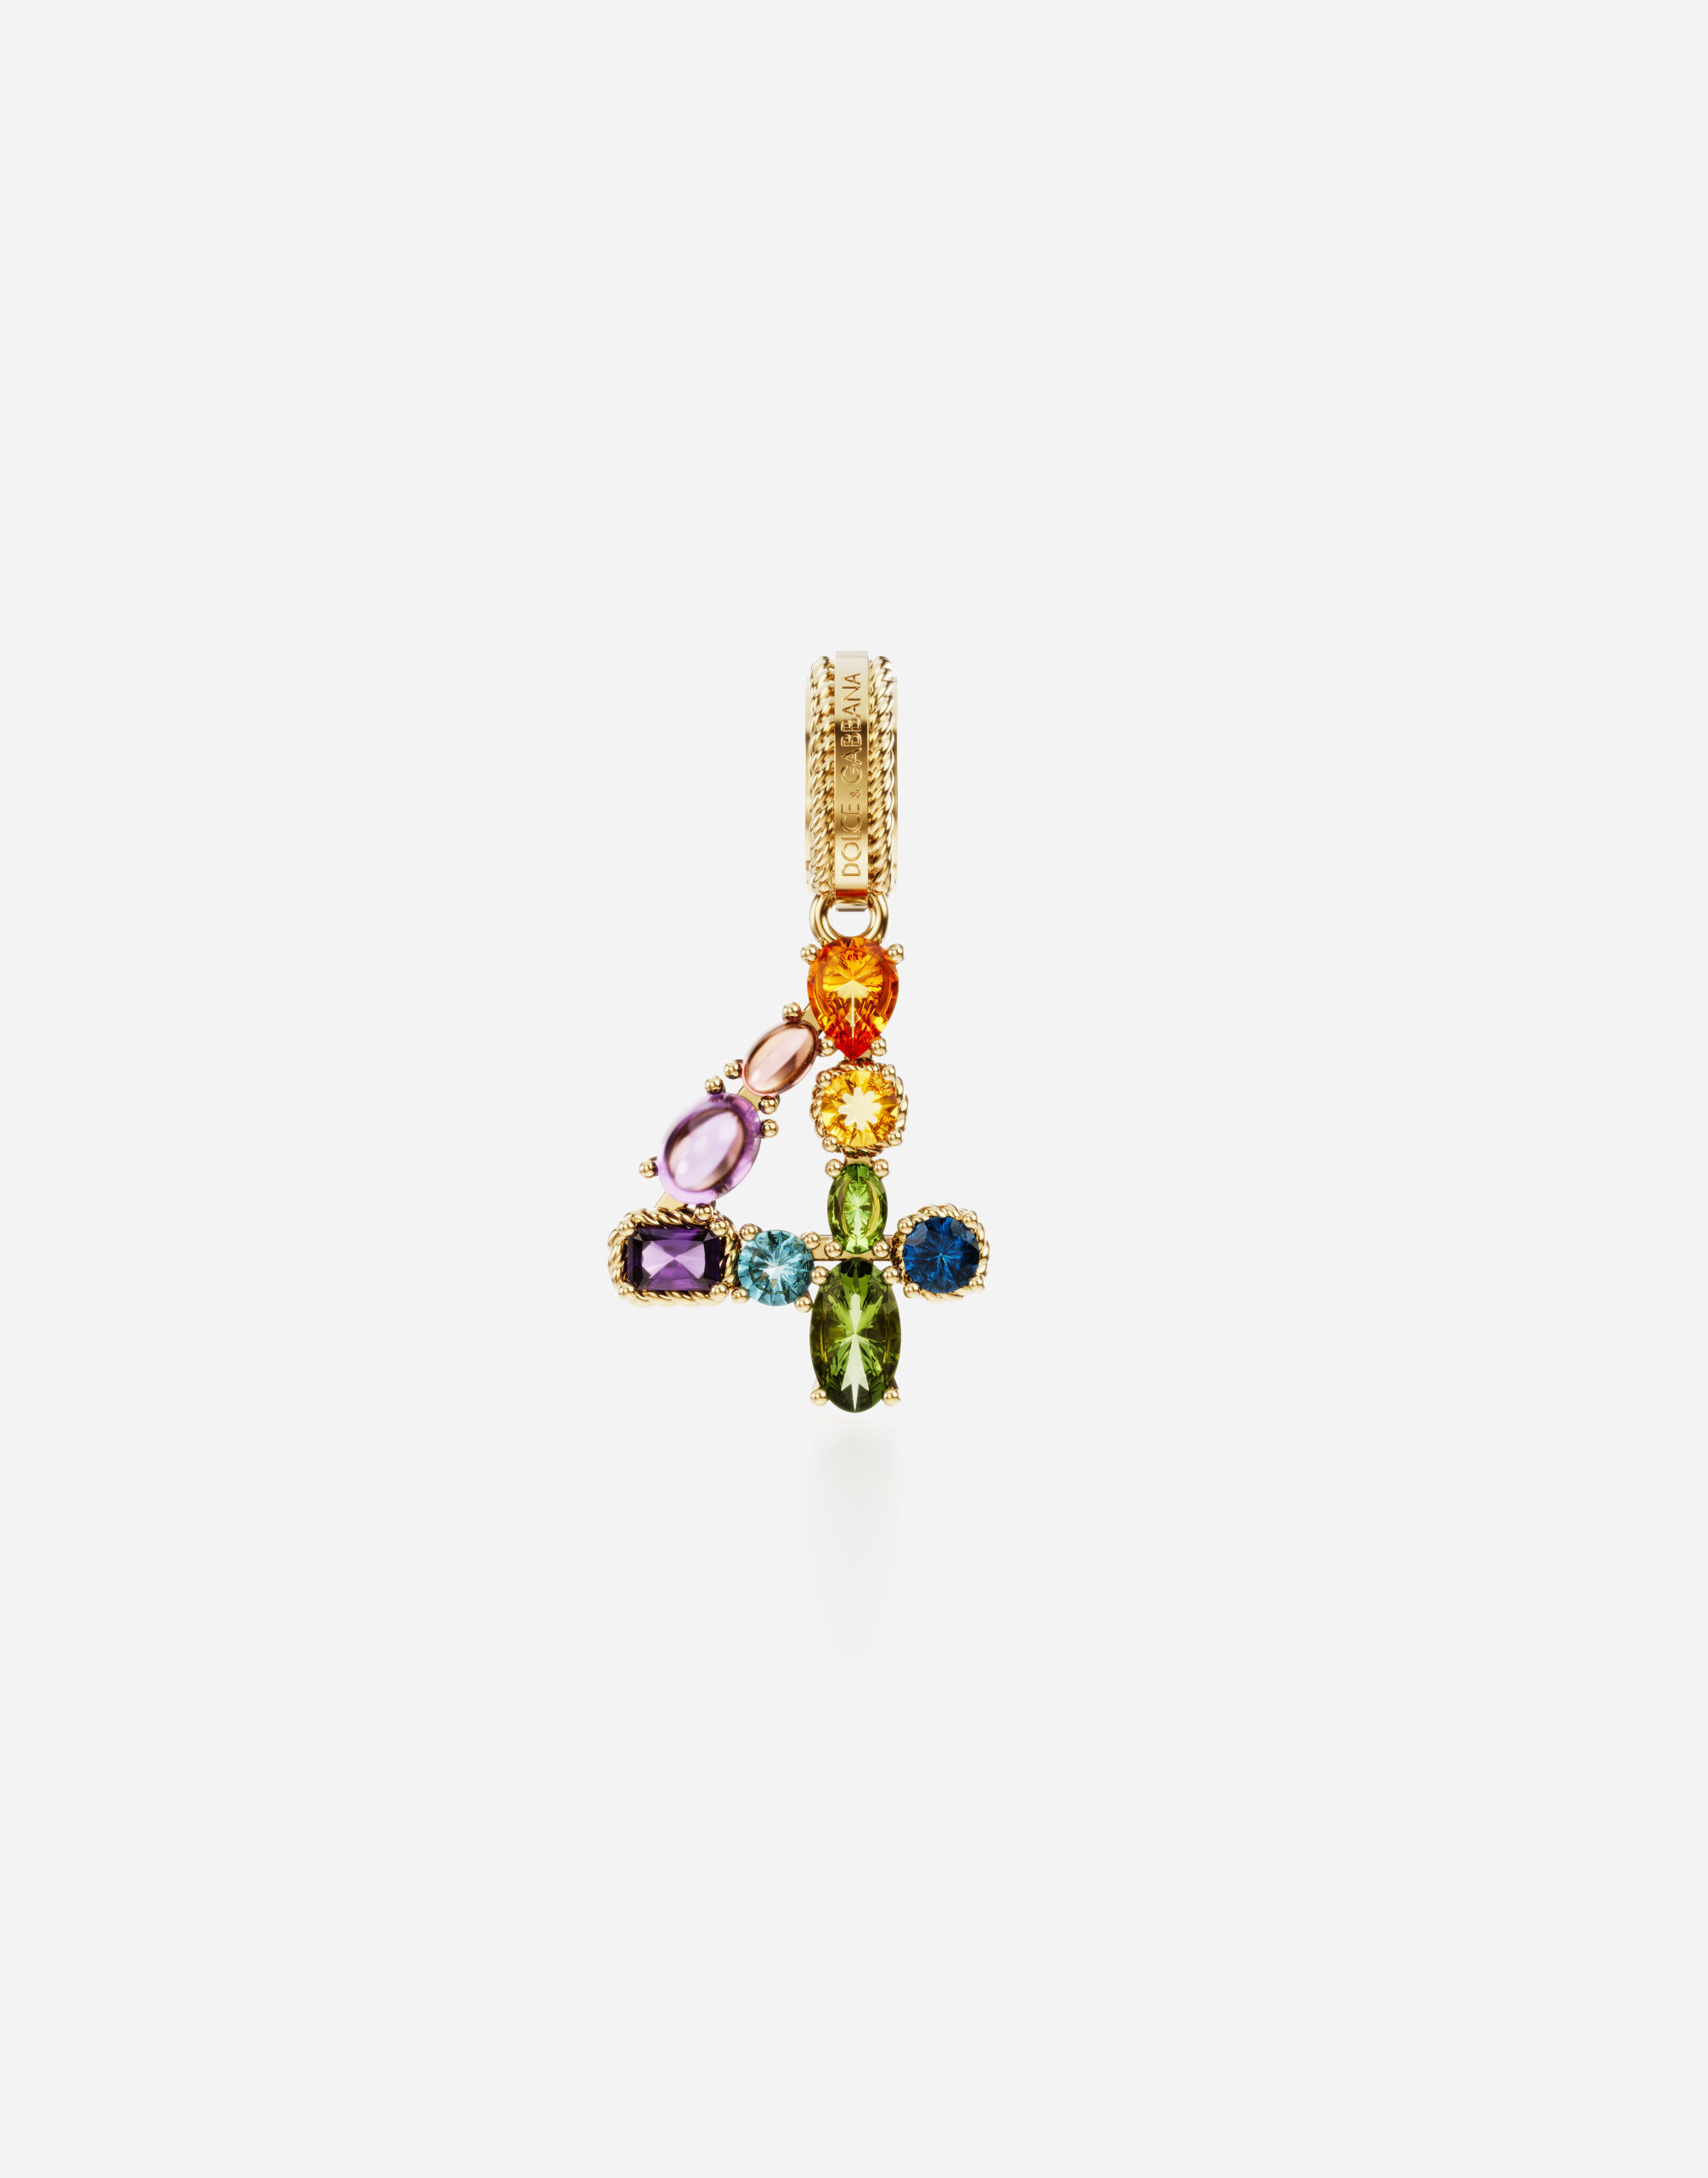 Dolce & Gabbana Anhänger „Rainbow“ aus 18 kt Gelbgold mit mehrfarbigen Edelsteinen, die die Zahl 4 darstellen GOLD WANR1GWMIXQ